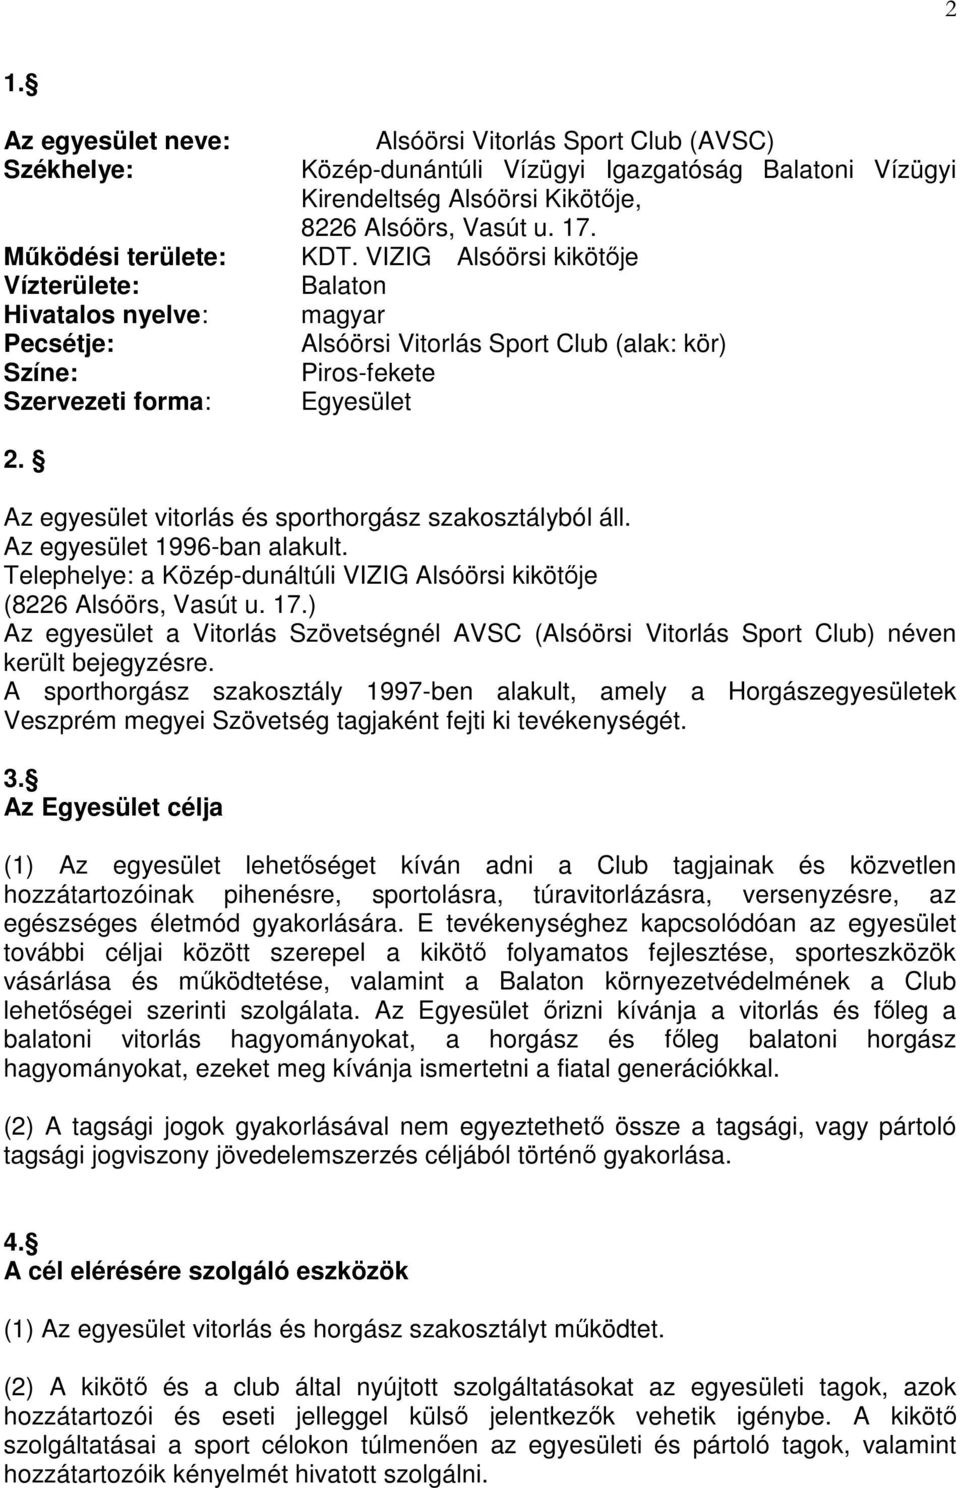 Az egyesület vitorlás és sporthorgász szakosztályból áll. Az egyesület 1996-ban alakult. Telephelye: a Közép-dunáltúli VIZIG Alsóörsi kikötője (8226 Alsóörs, Vasút u. 17.